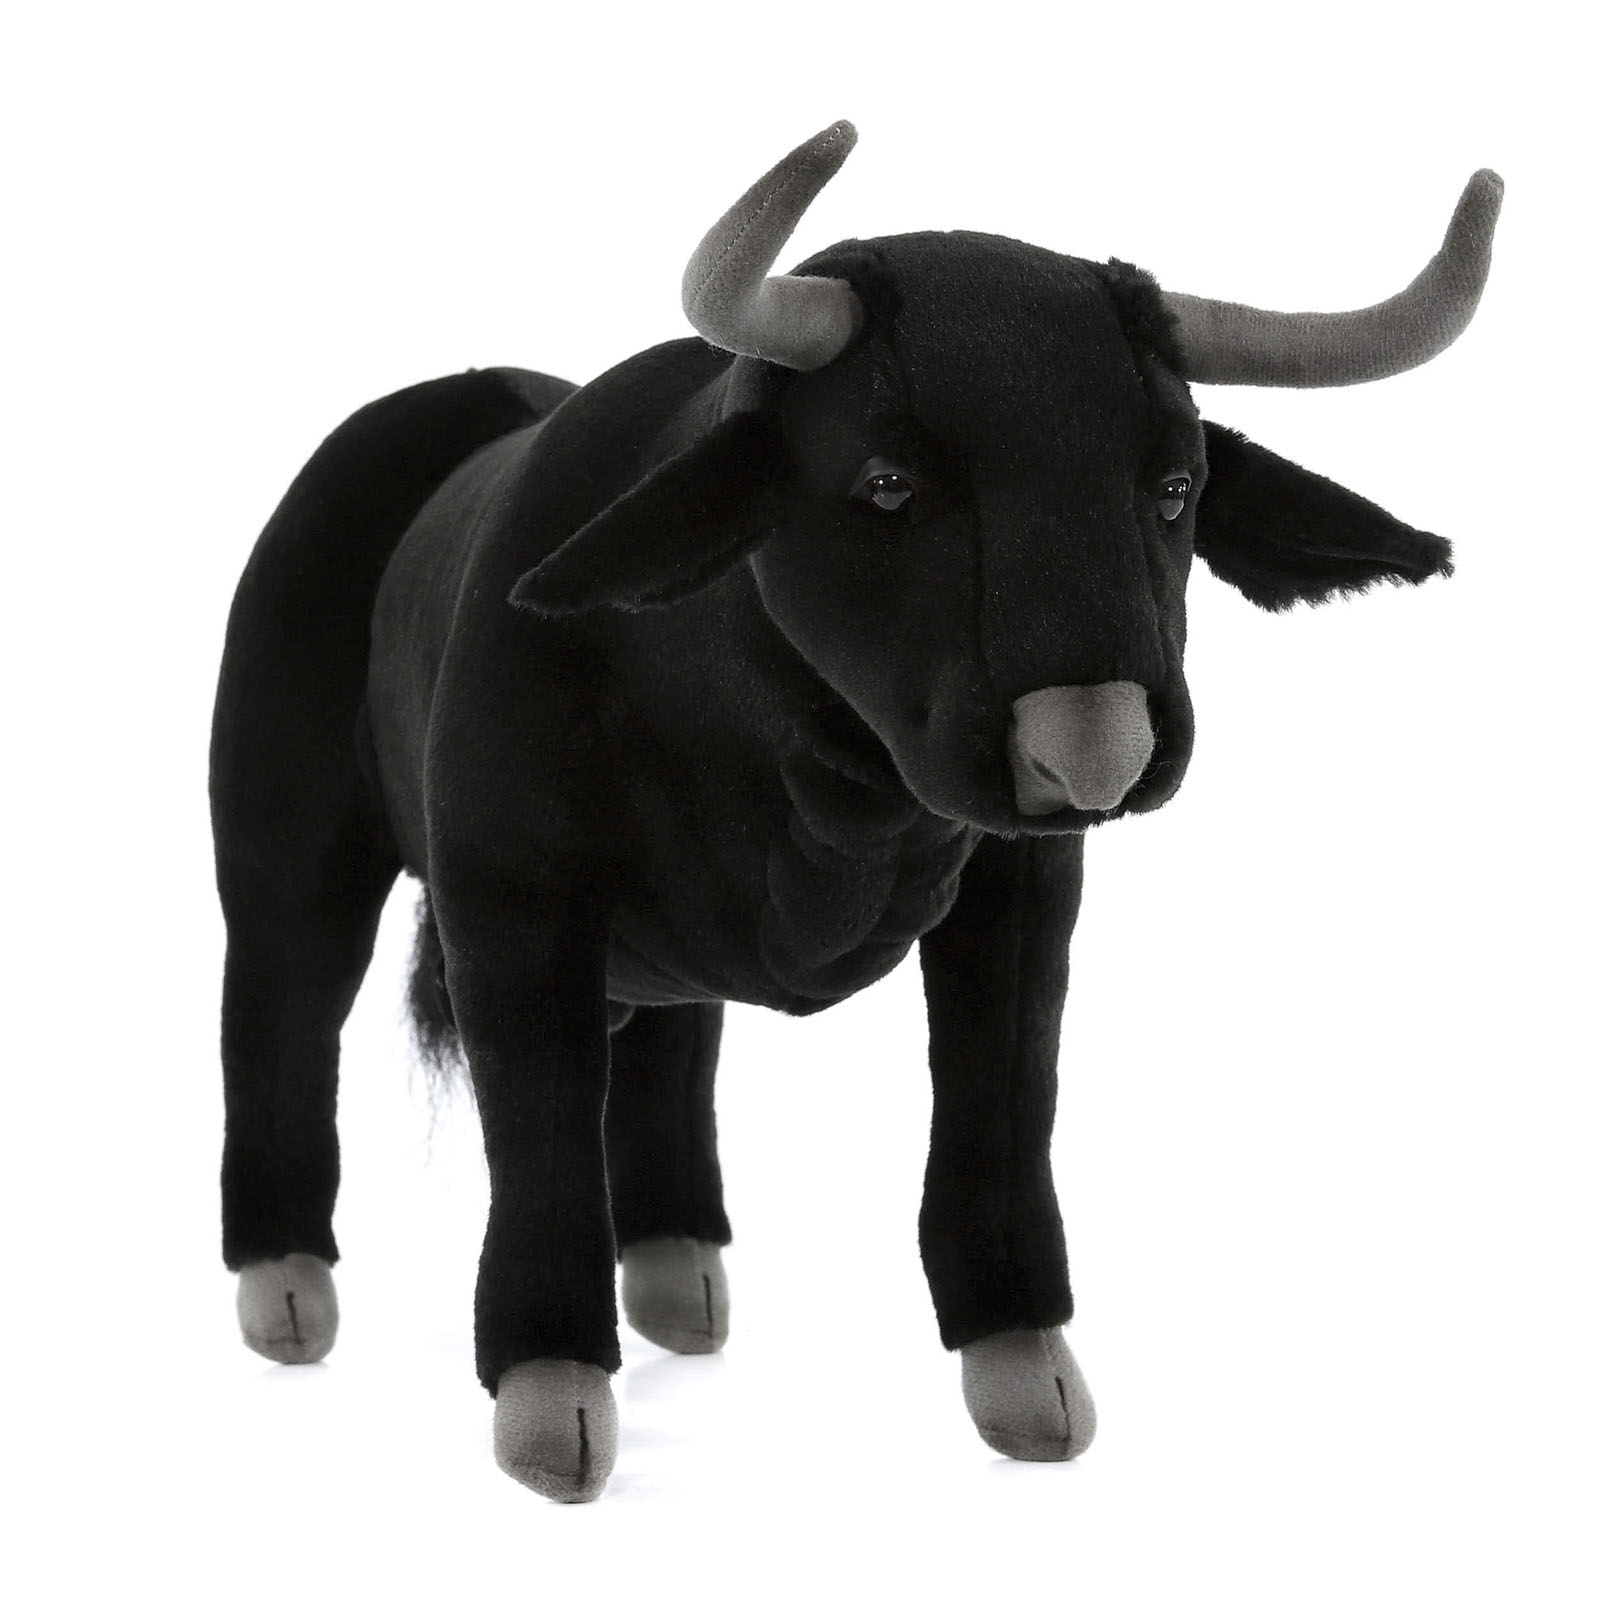 Реалистичная мягкая игрушка Hansa Creation Испанский бык, 40 см мягкая игрушка hansa газель 4778